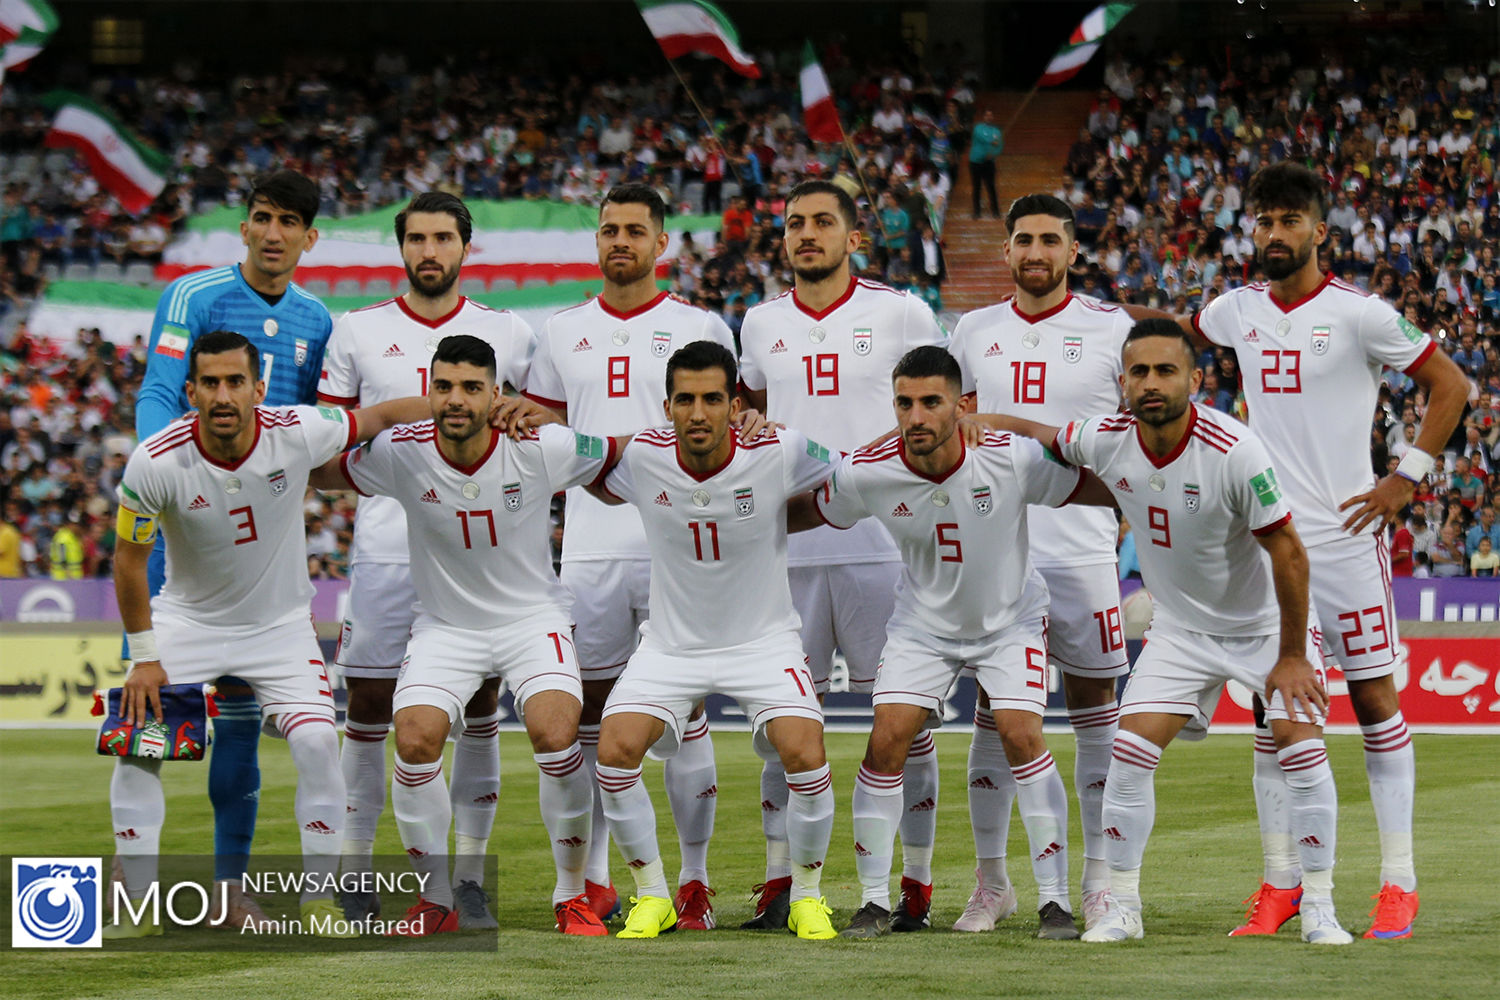 رده بندی جدید فیفا اعلام شد/ صعود رتبه تیم ملی ایران